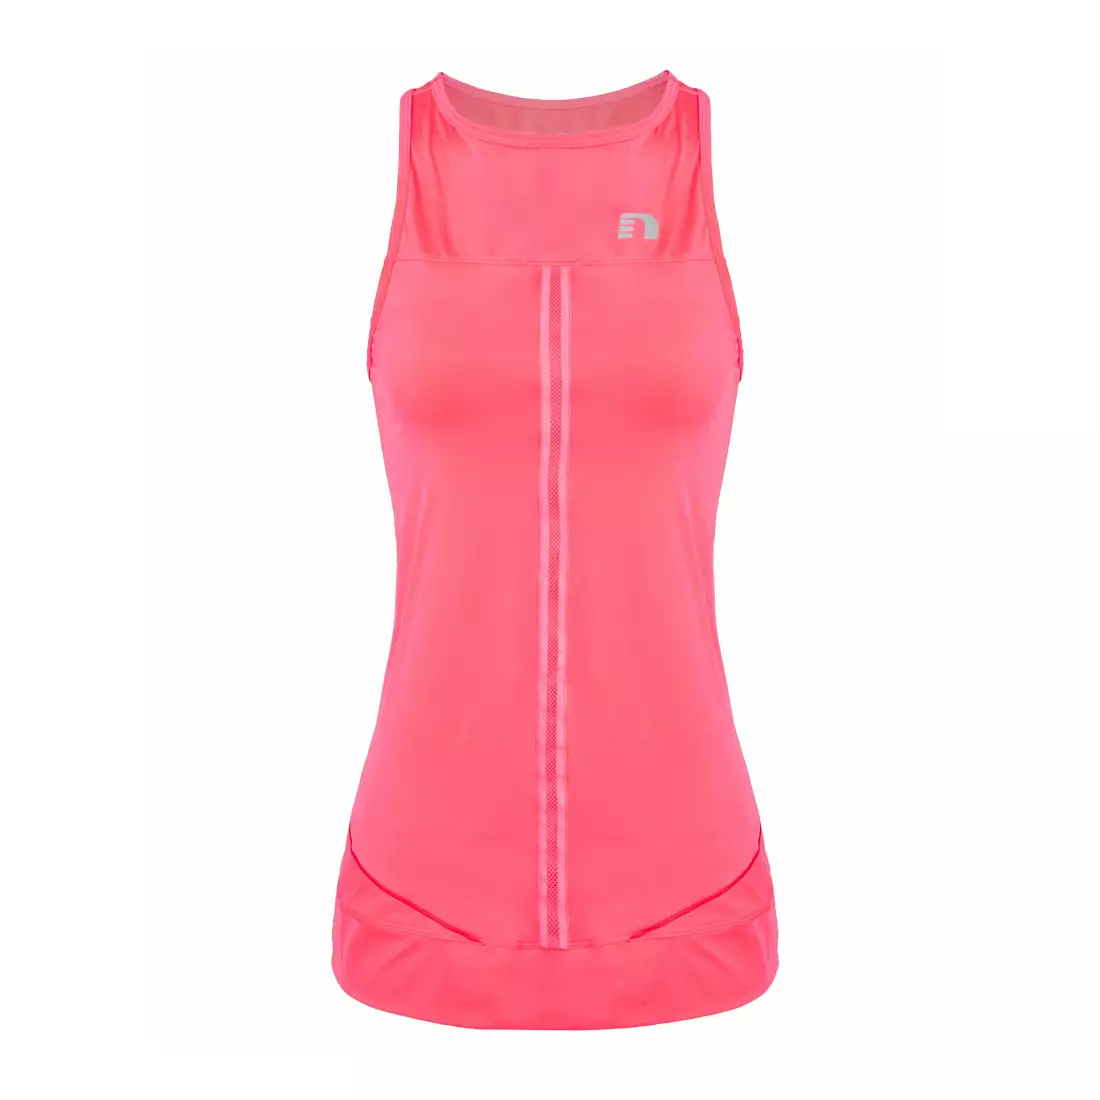 NEWLINE IMOTION TANK 10793-274 - női b/r futópóló, szín: fluor rózsaszín